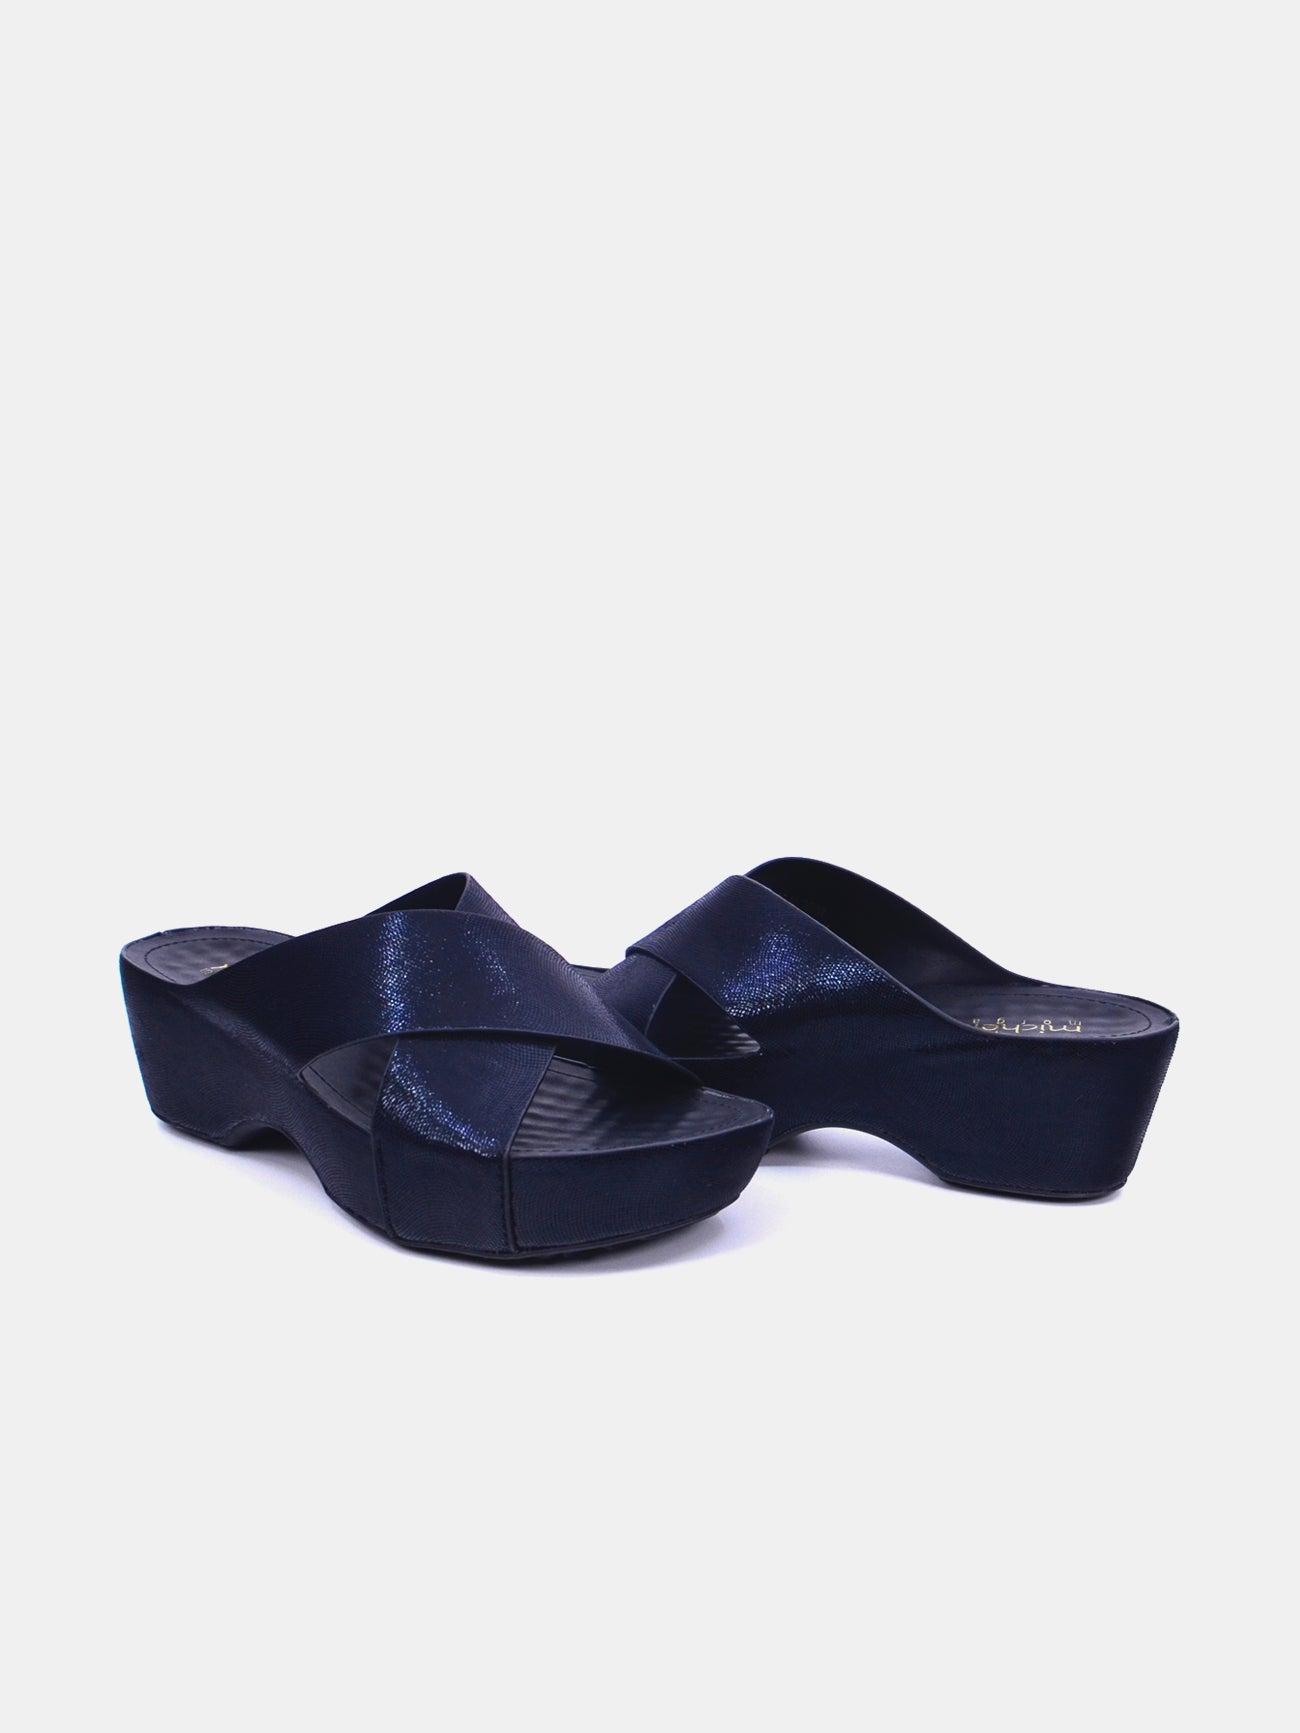 Michelle Morgan 214RJ955 Women's Wedge Sandals #color_Black